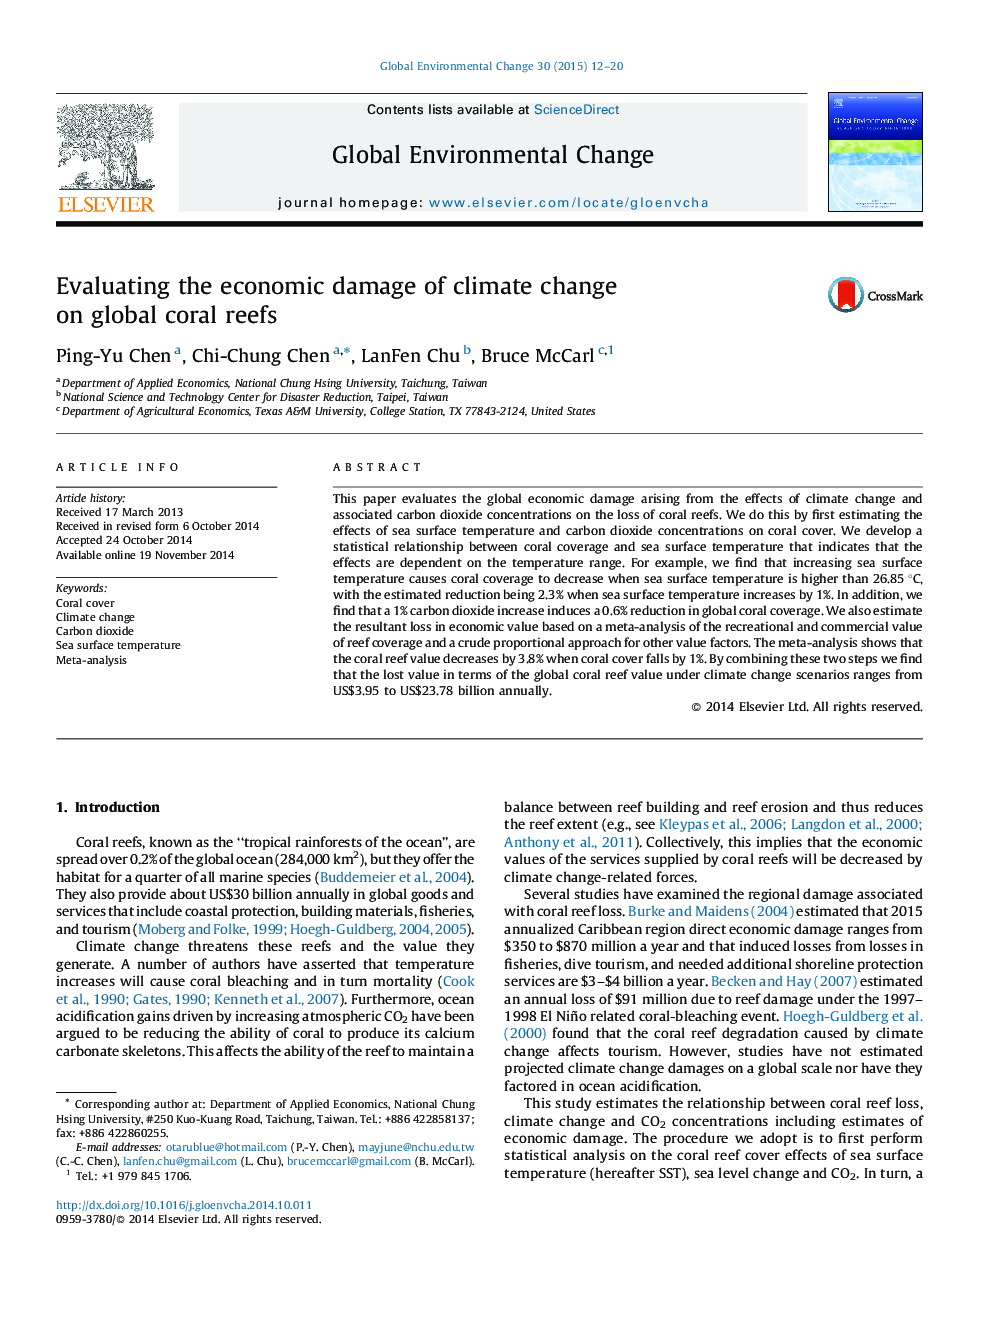 ارزیابی خسارت های اقتصادی تغییرات آب و هوایی بر صخره های مرجانی جهانی